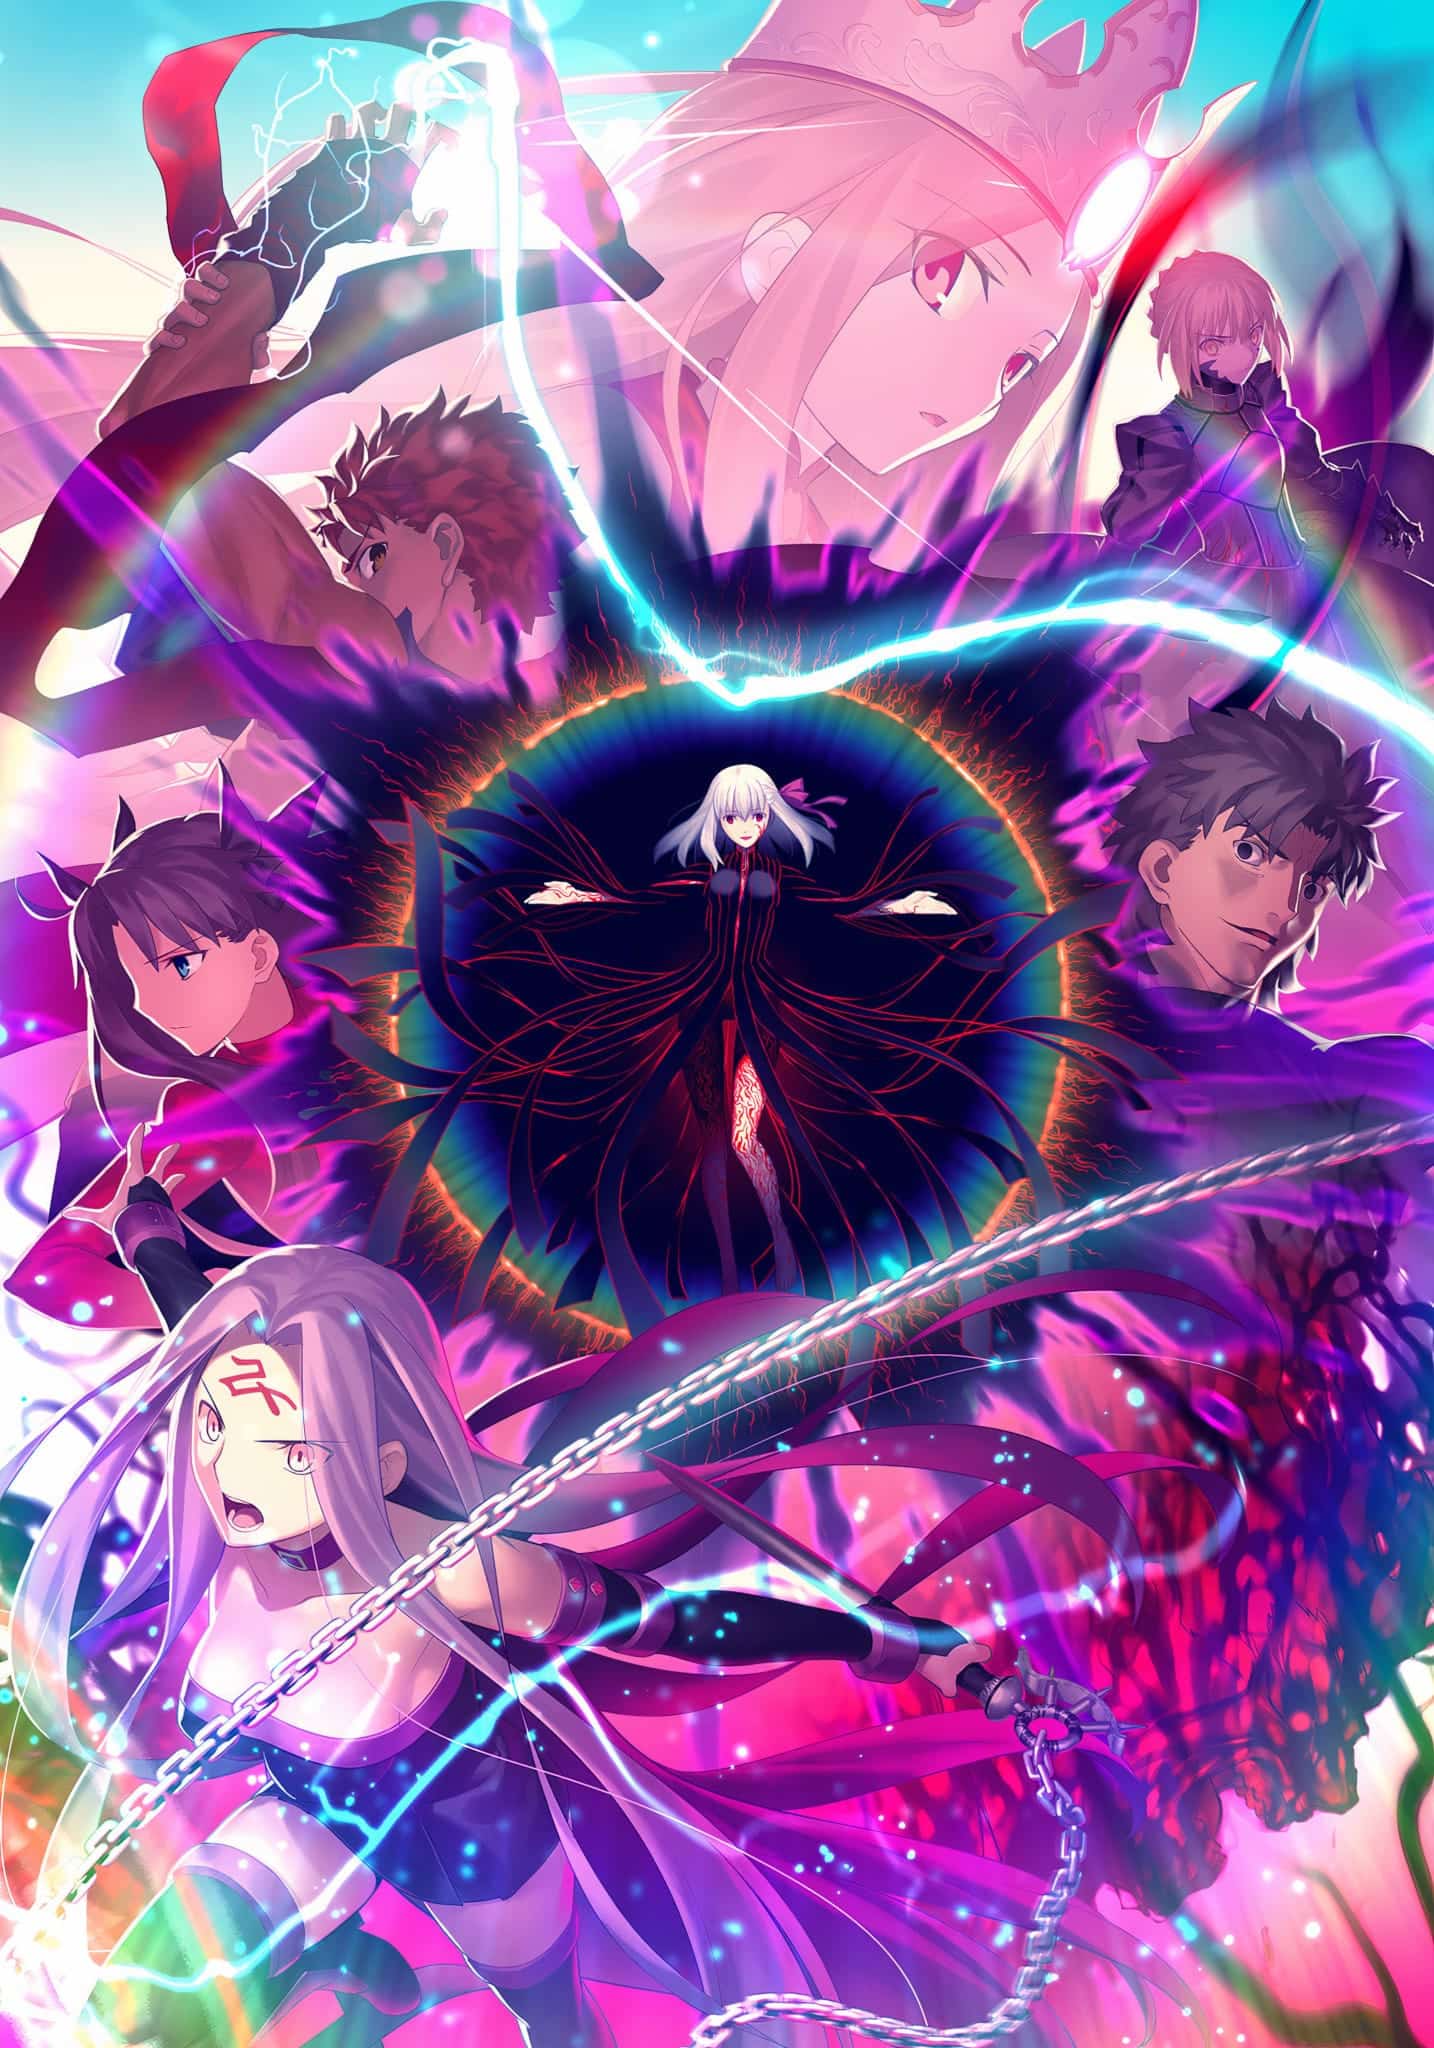 Annonce de Fate/Stay Night Heavens Feel 3 parmi les animes du printemps 2021